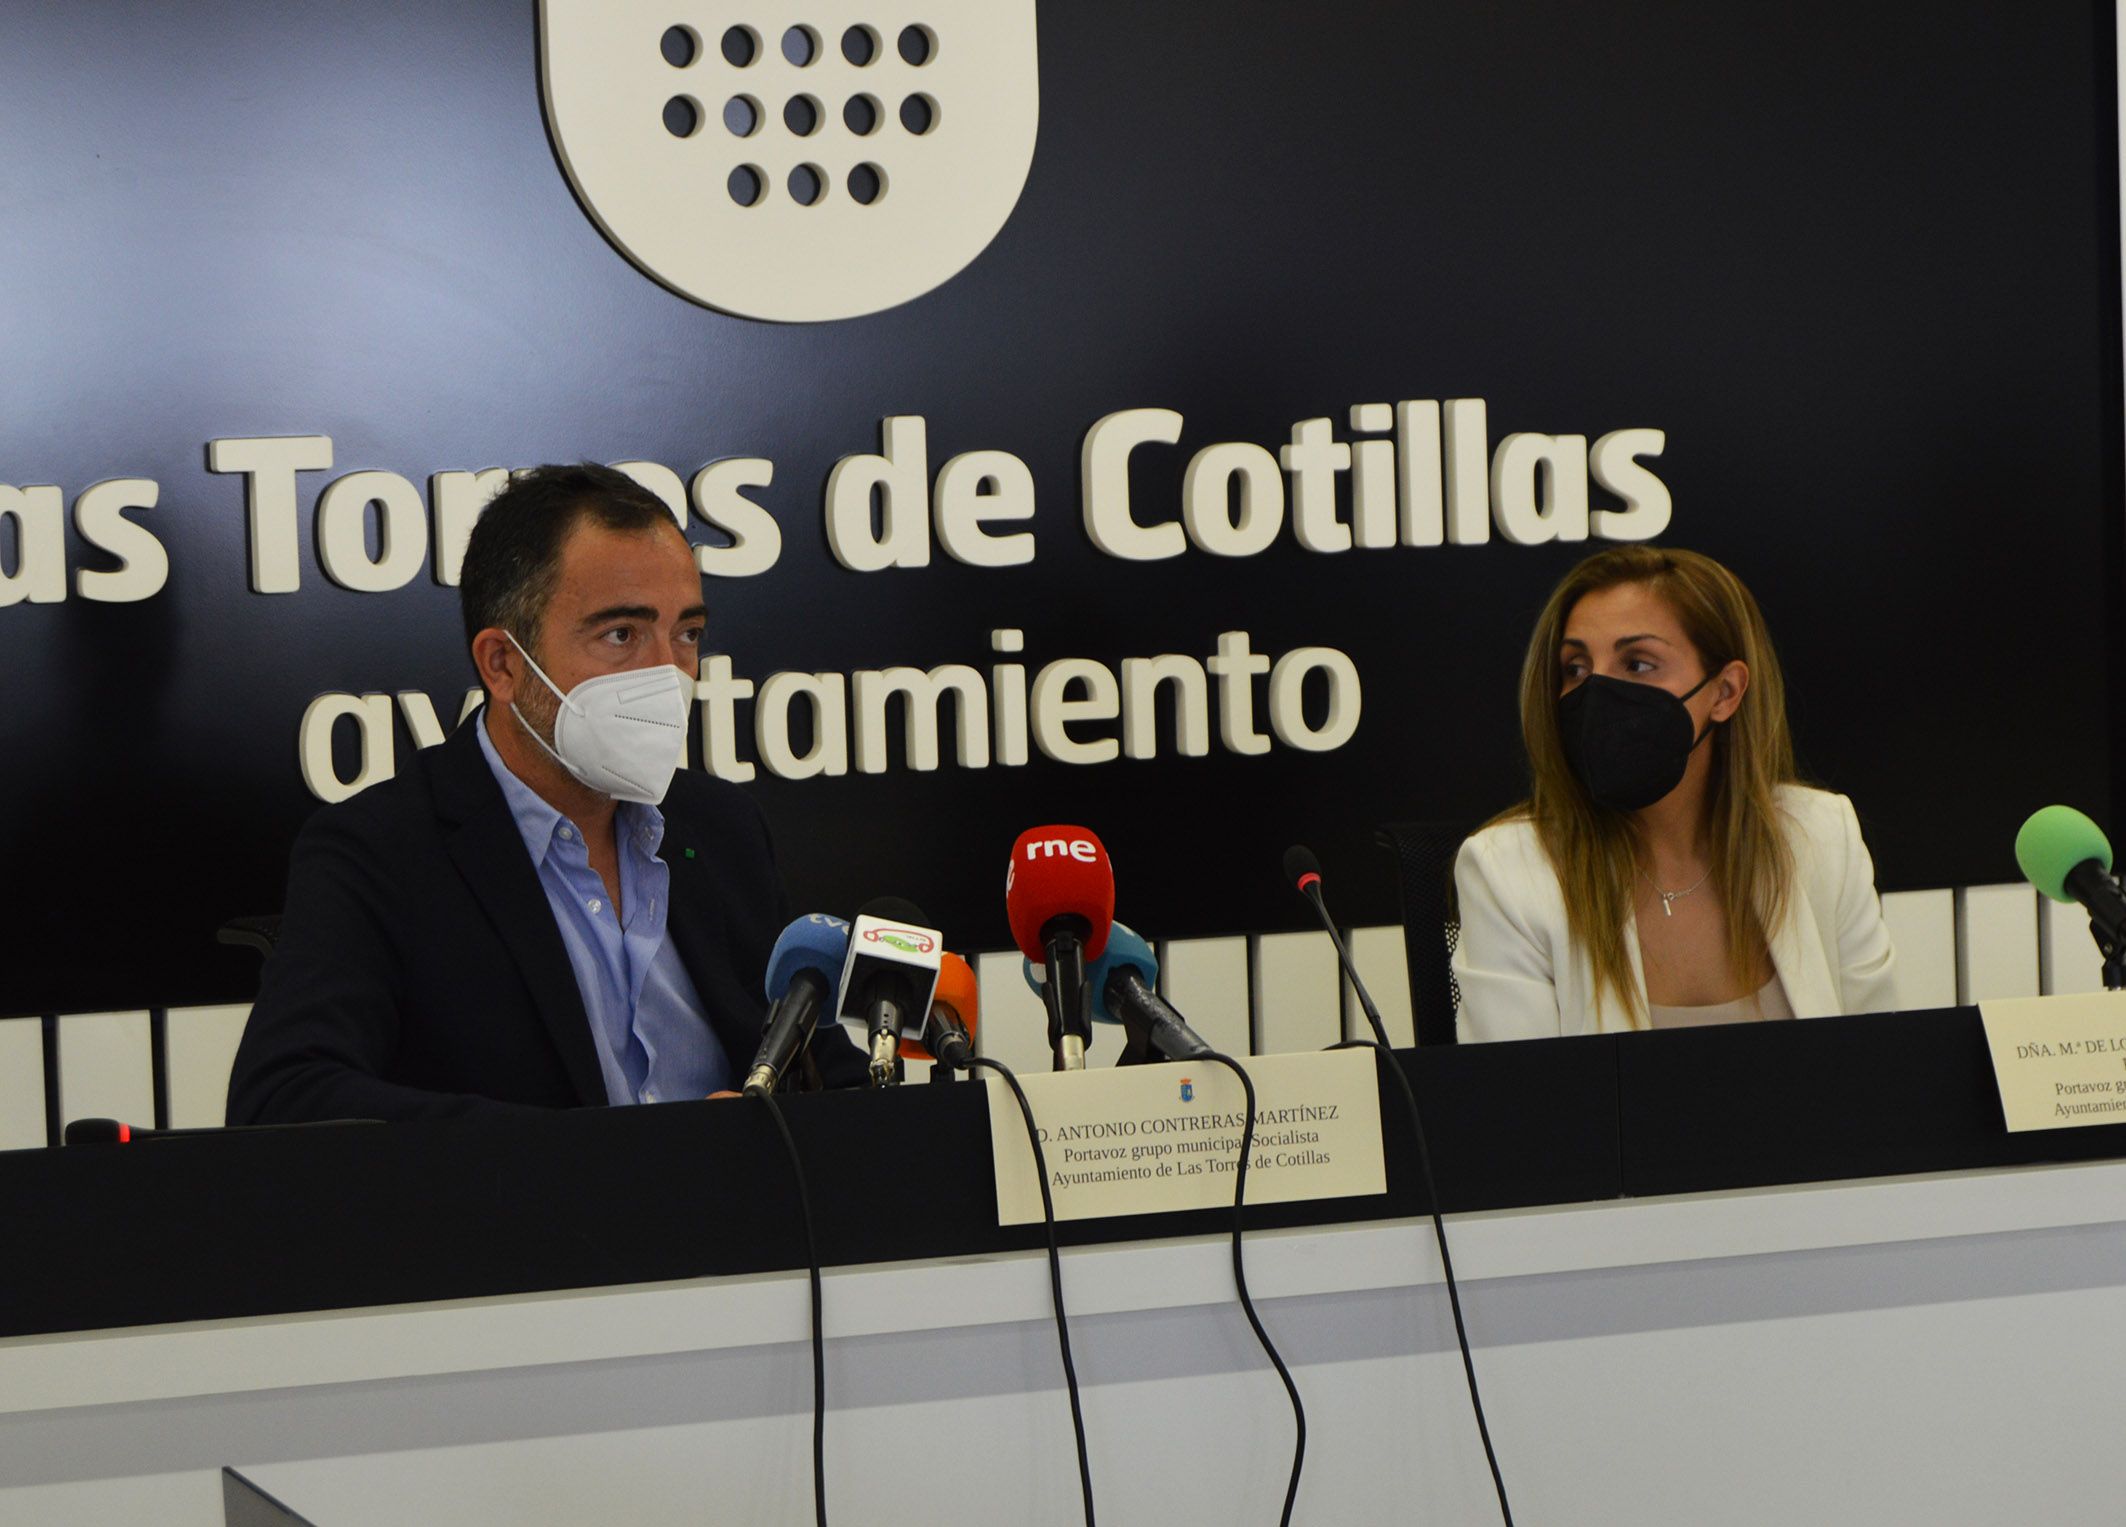 El pacto de gobierno entre PSOE y Ciudadanos sigue vigente en el Ayuntamiento de Las Torres de Cotillas3